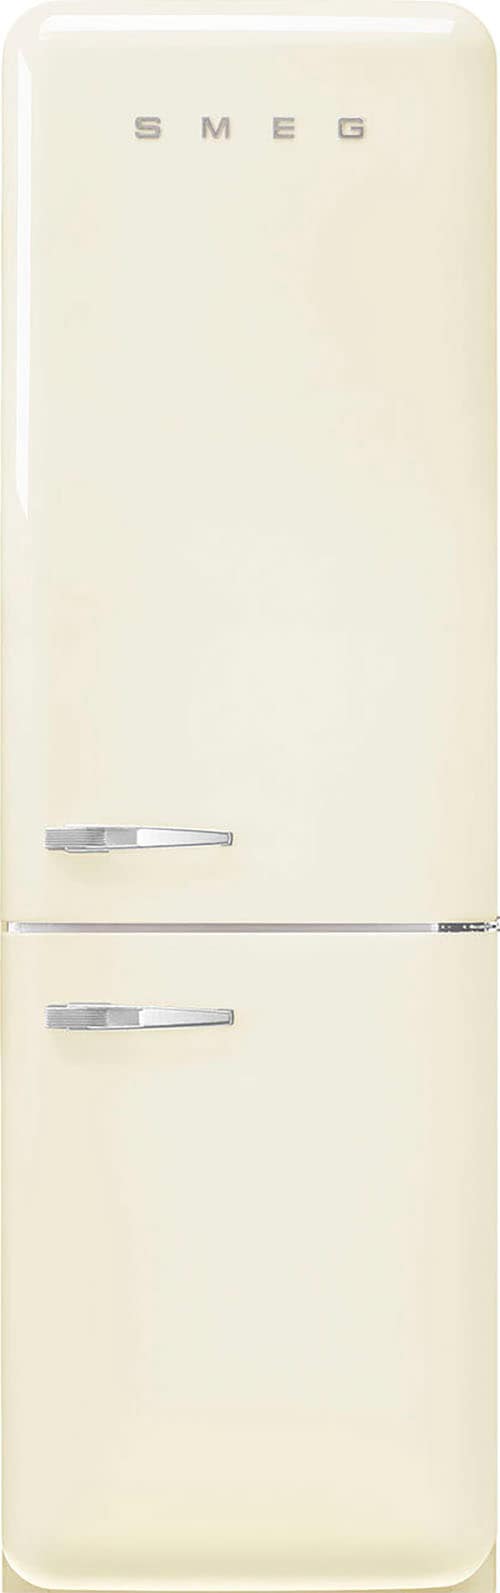 Kühl-/Gefrierkombination »FAB32«, FAB32RCR5, 196,8 cm hoch, 60,1 cm breit